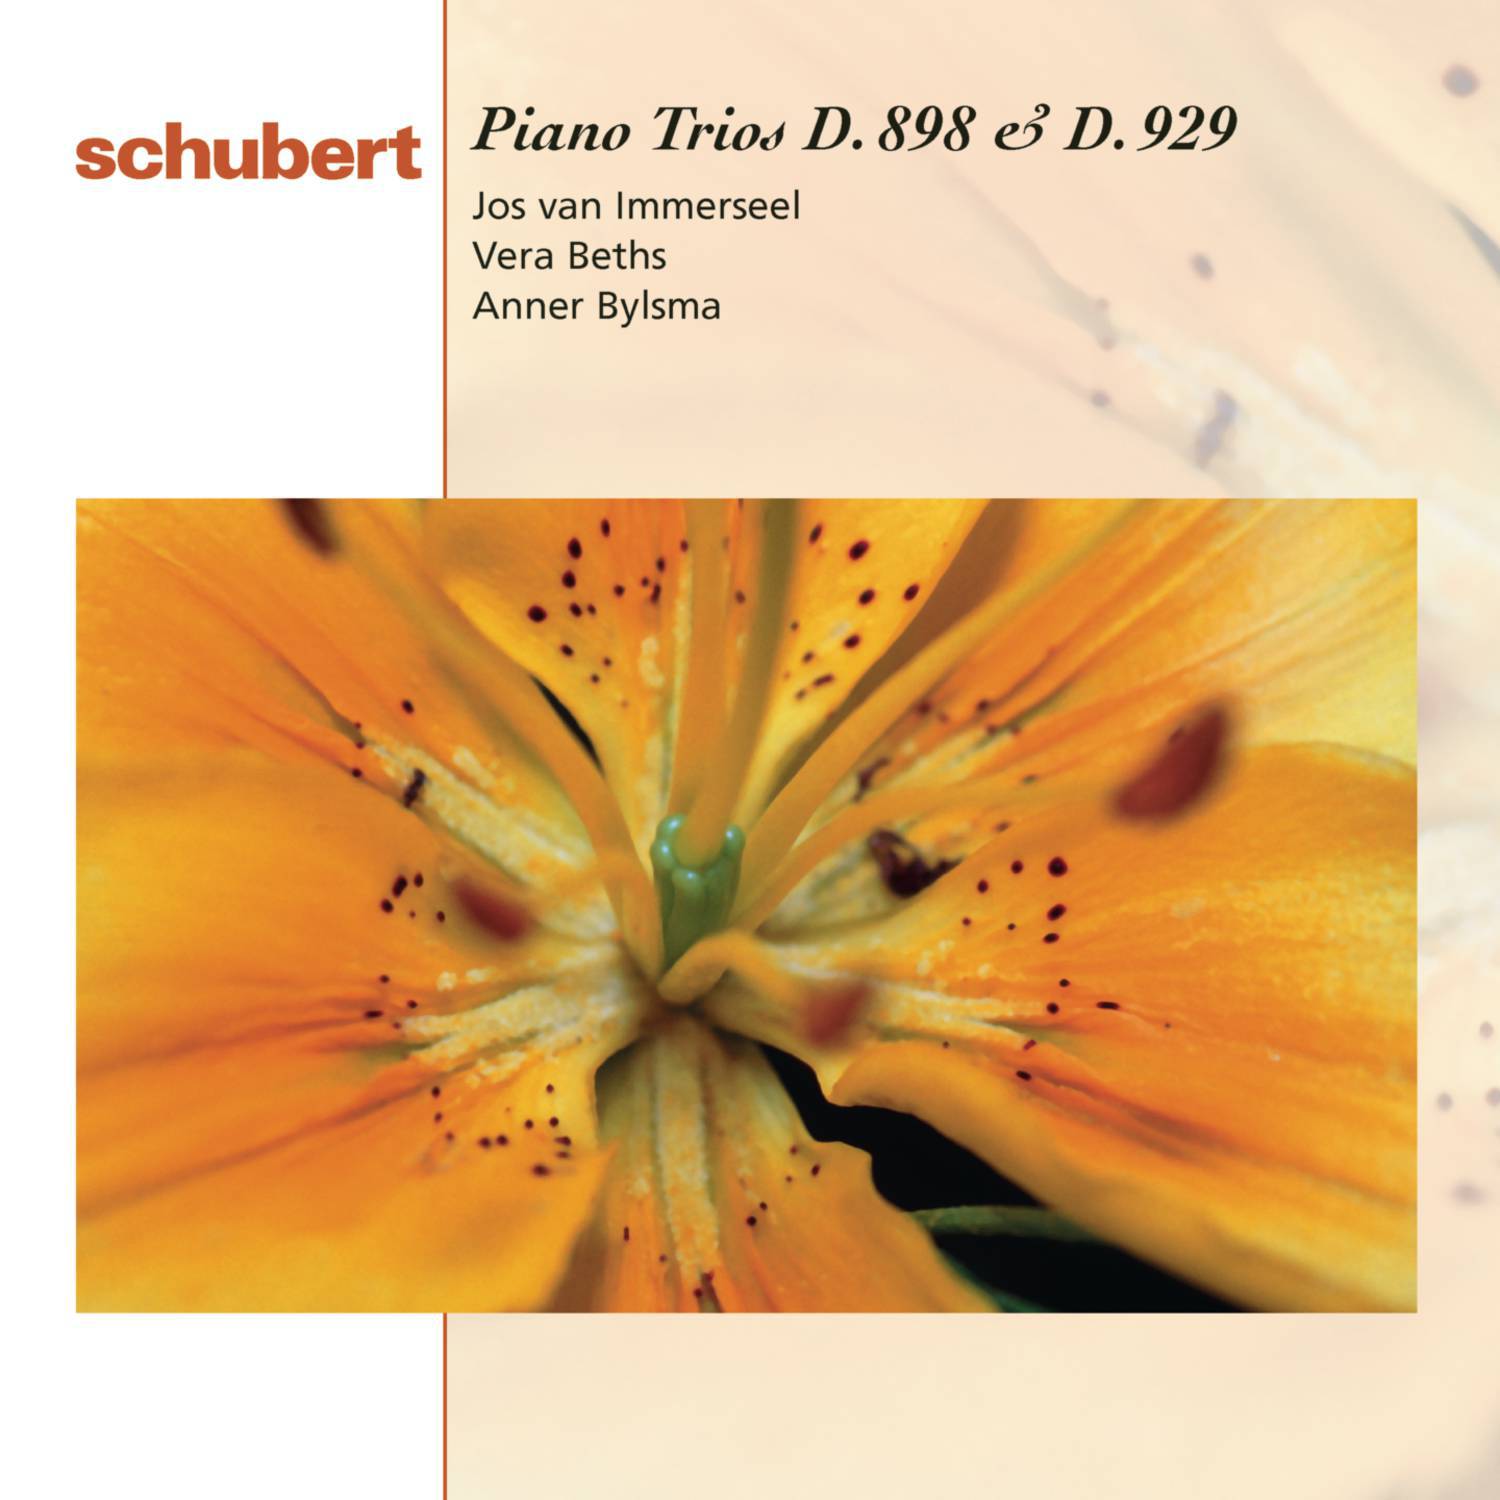 Piano Trio No. 1 in B-Flat Major, D. 898, Op. 99: III. Scherzo. Allegro - Trio